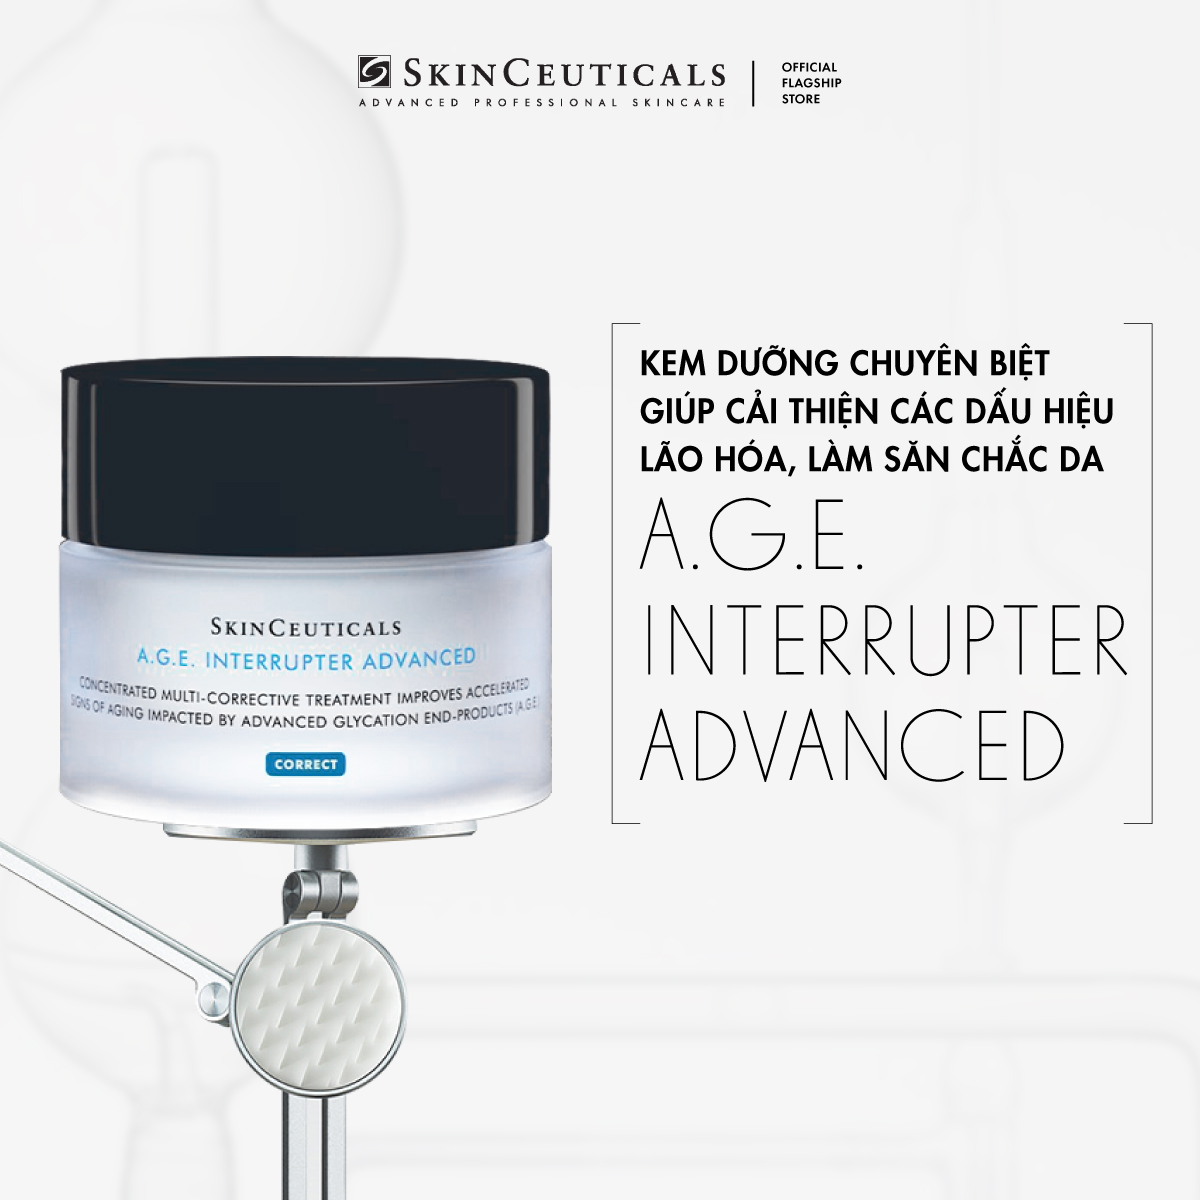 Kem dưỡng chuyên biệt Skinceuticals A.G.E. Interrupter Advanced giúp cải thiện các vấn đề lão hóa da và dưỡng da săn chắc 48ml